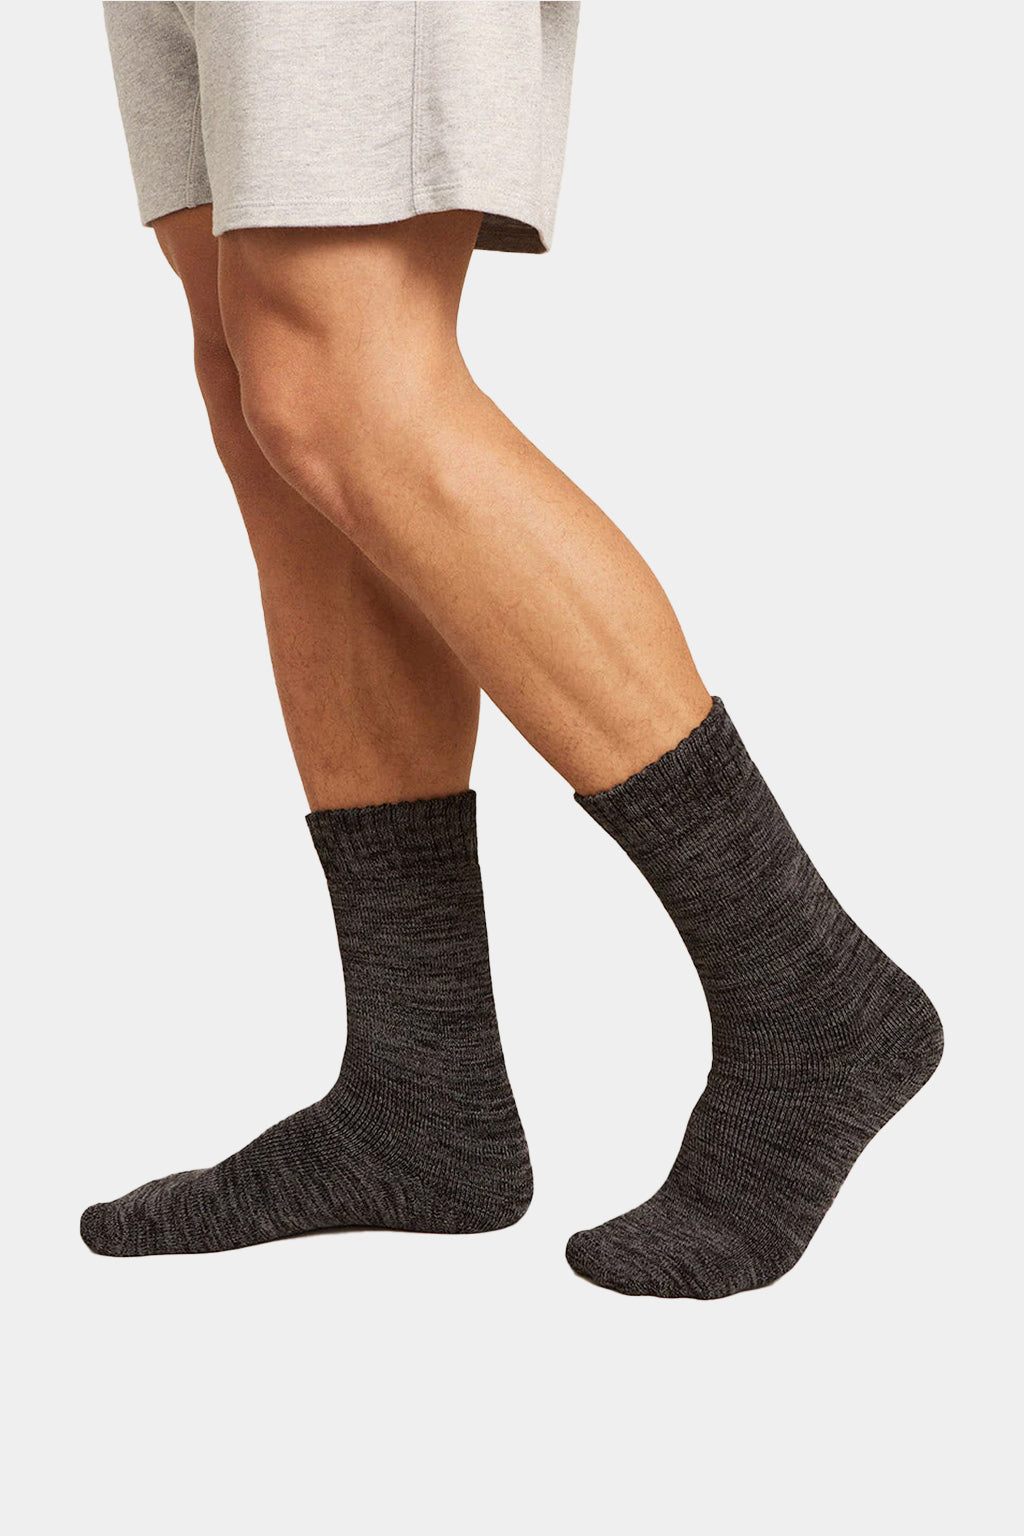 Boody - Men's Cushioned Work/Boot Socks (Pairs of three)